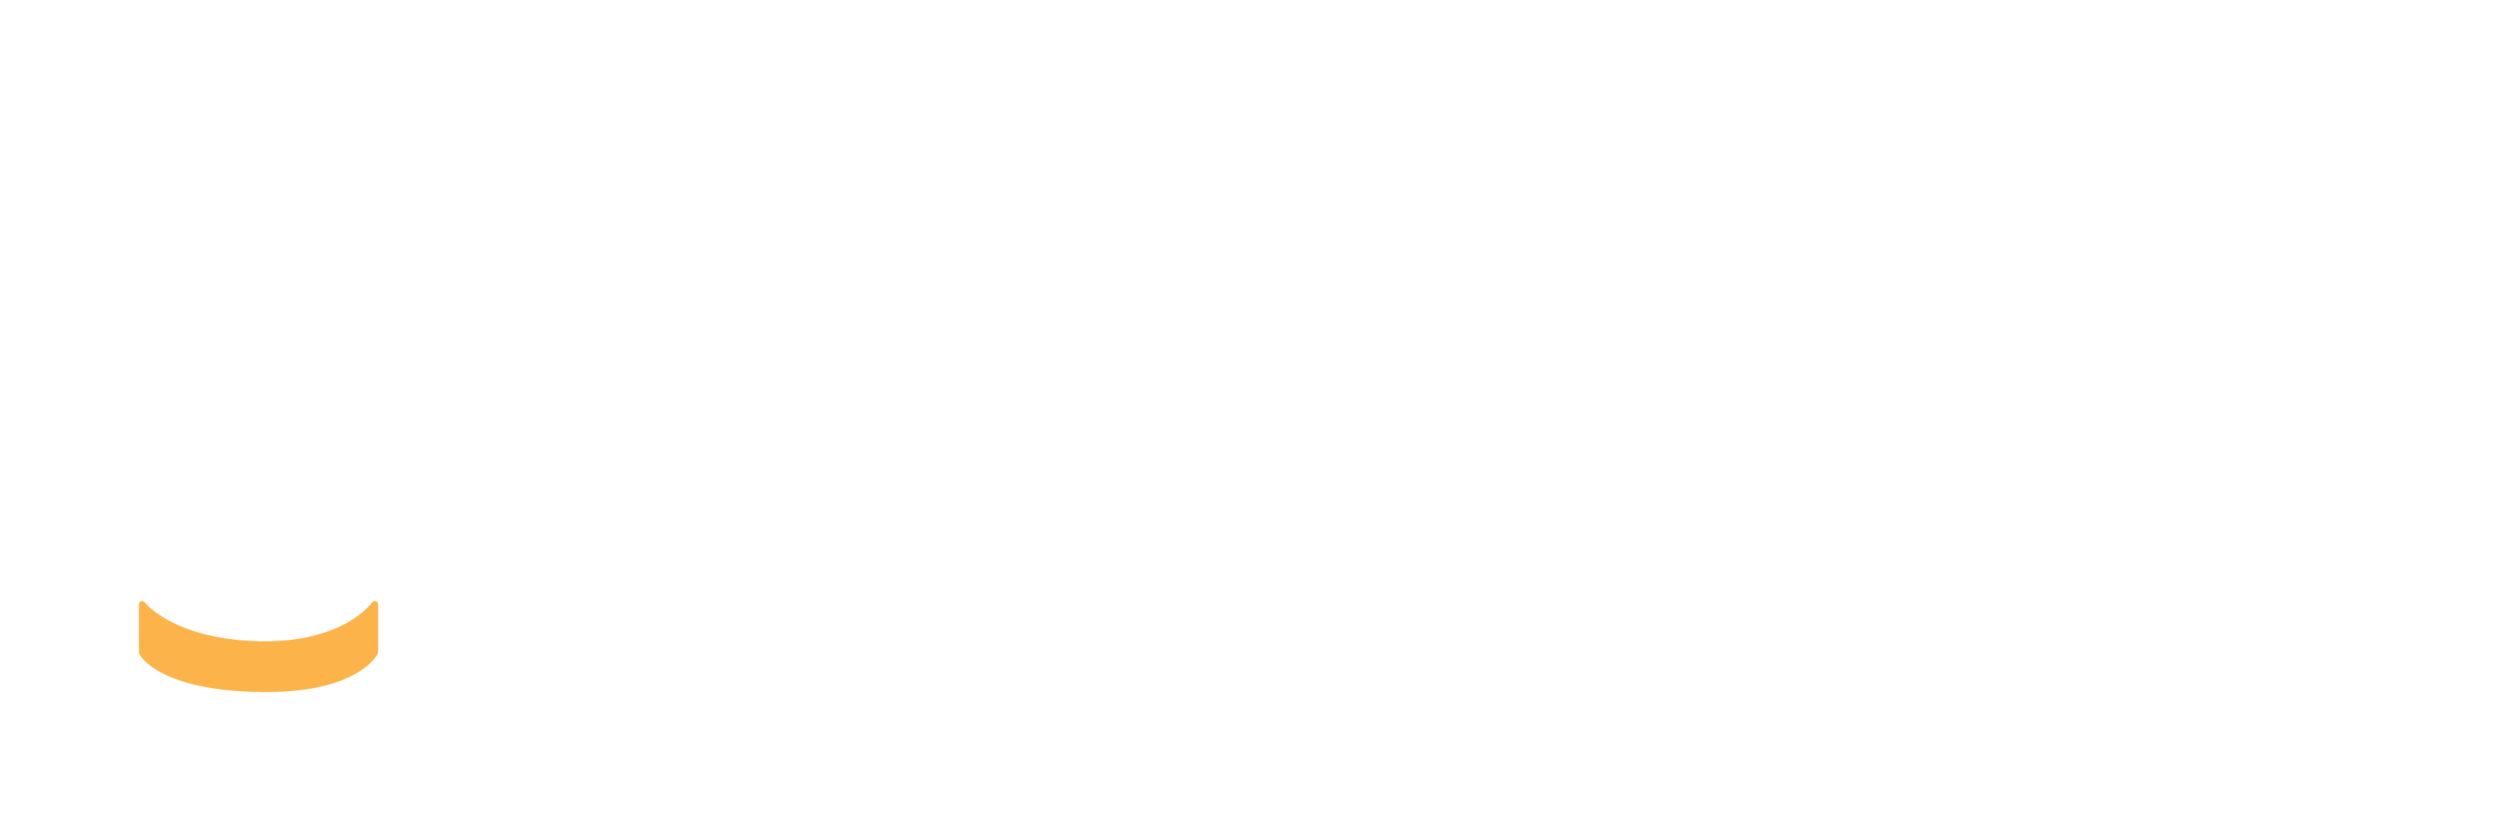 The Farnival